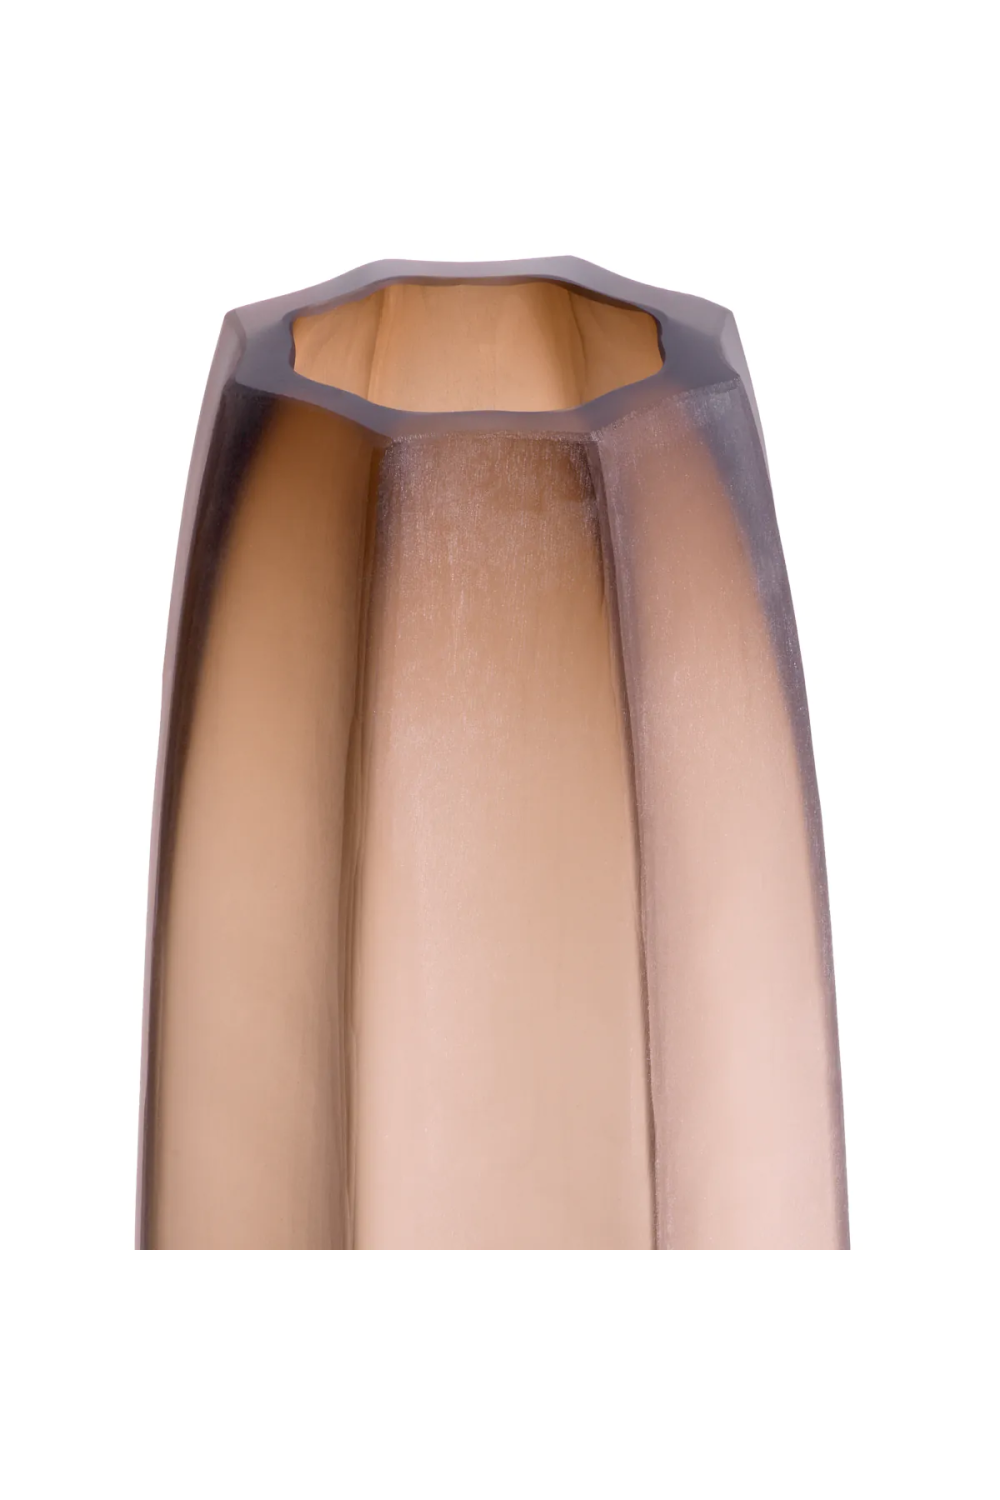 Narrow Glass Vase L | Eichholtz Tiara | Oroa.com